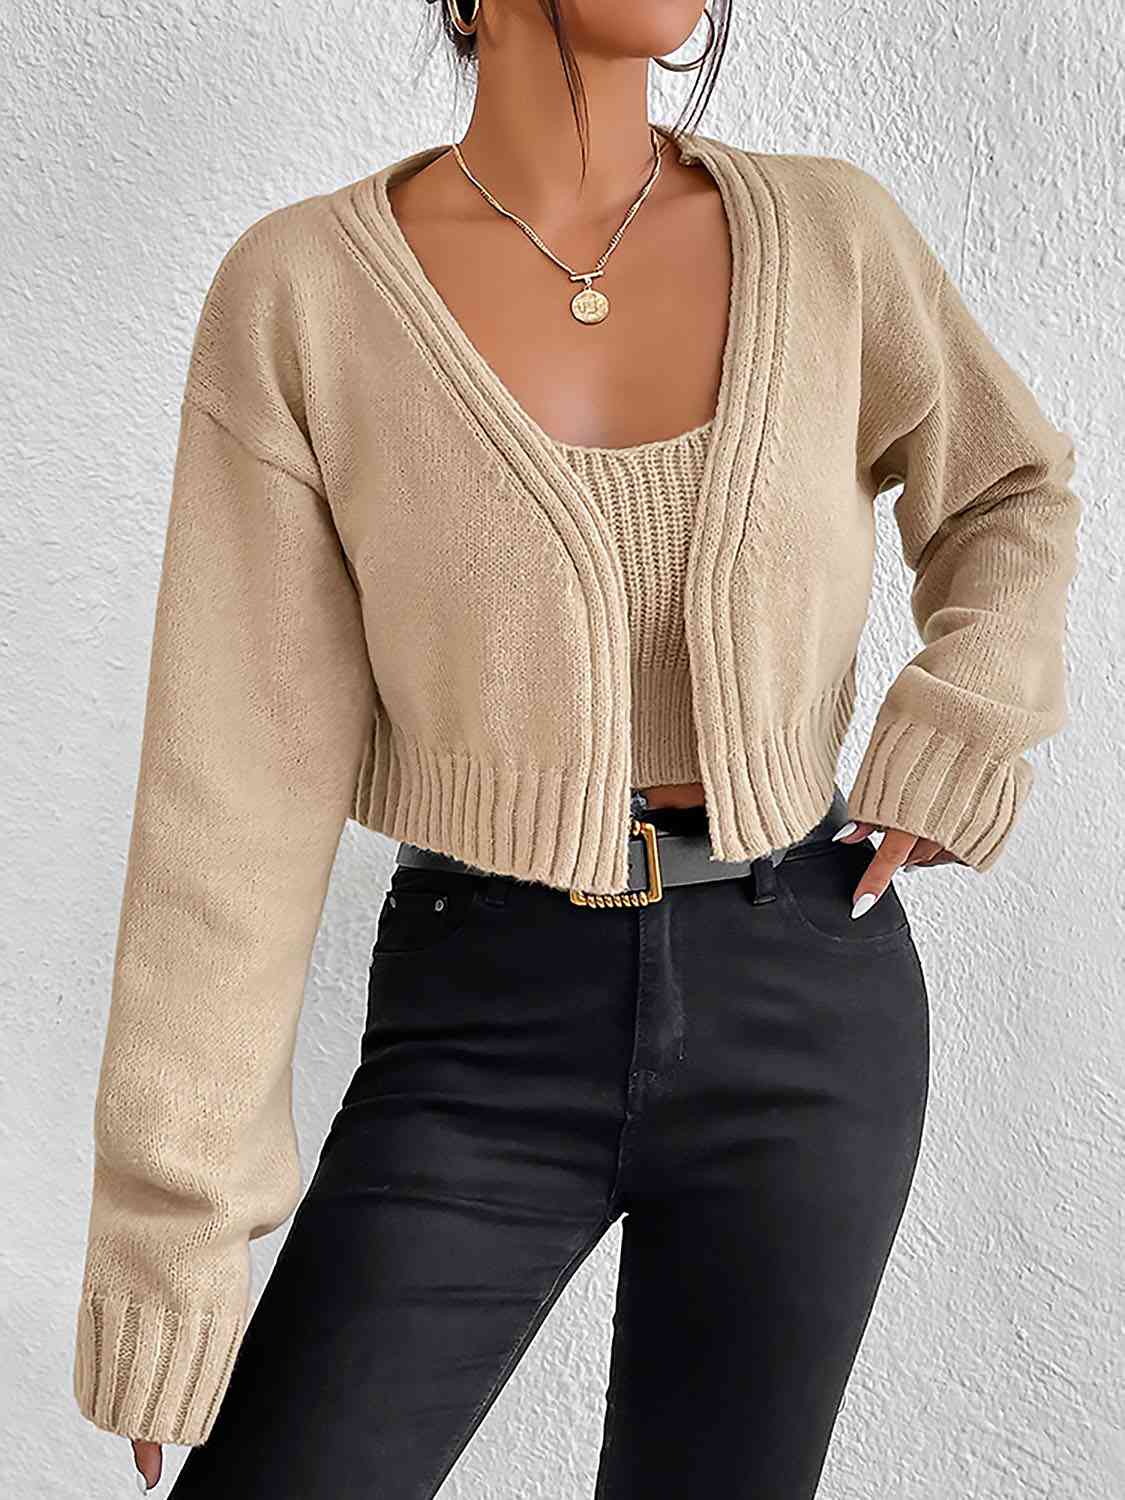 Women's Plain Sweater Cami and Cardigan Set